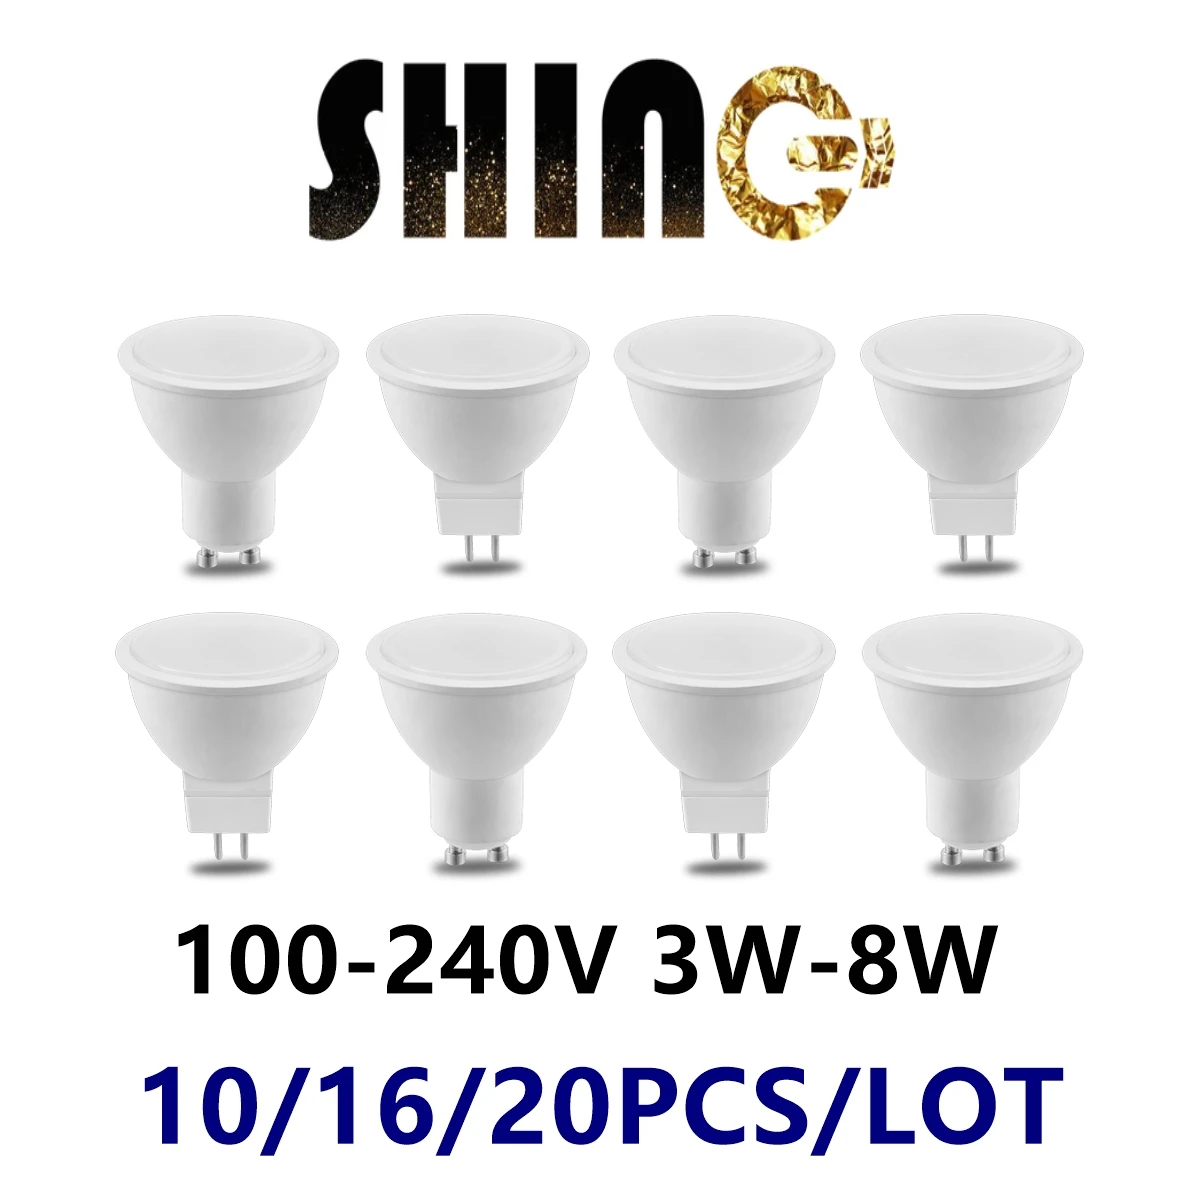 

Factory direct LED spot light MR16 GU10 3W-8W 110V 220V 3000K-6000K is suitable for study kitchen instead of 100W halogen lamp